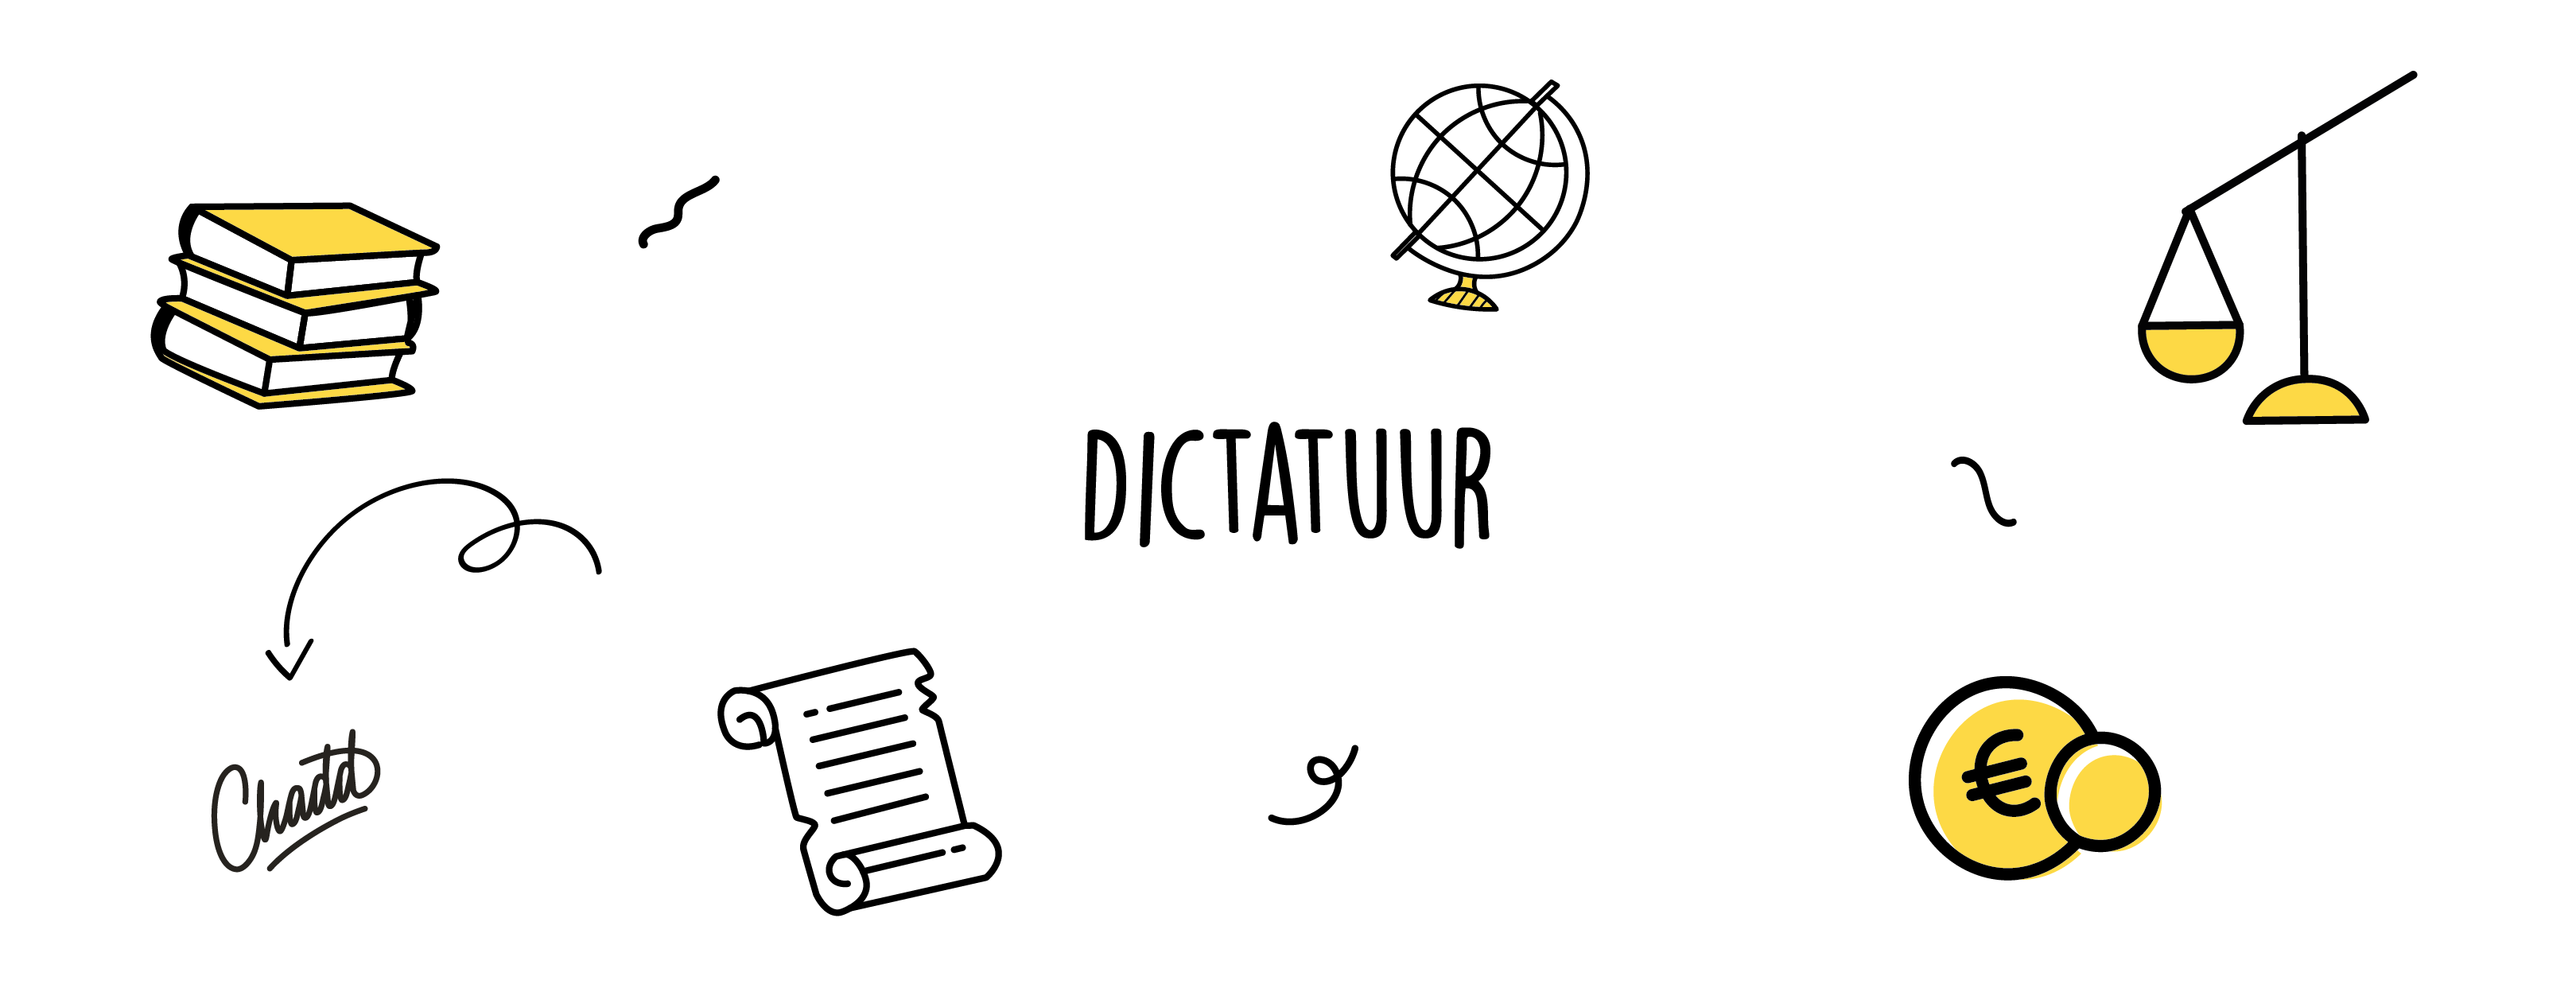 dictatuur